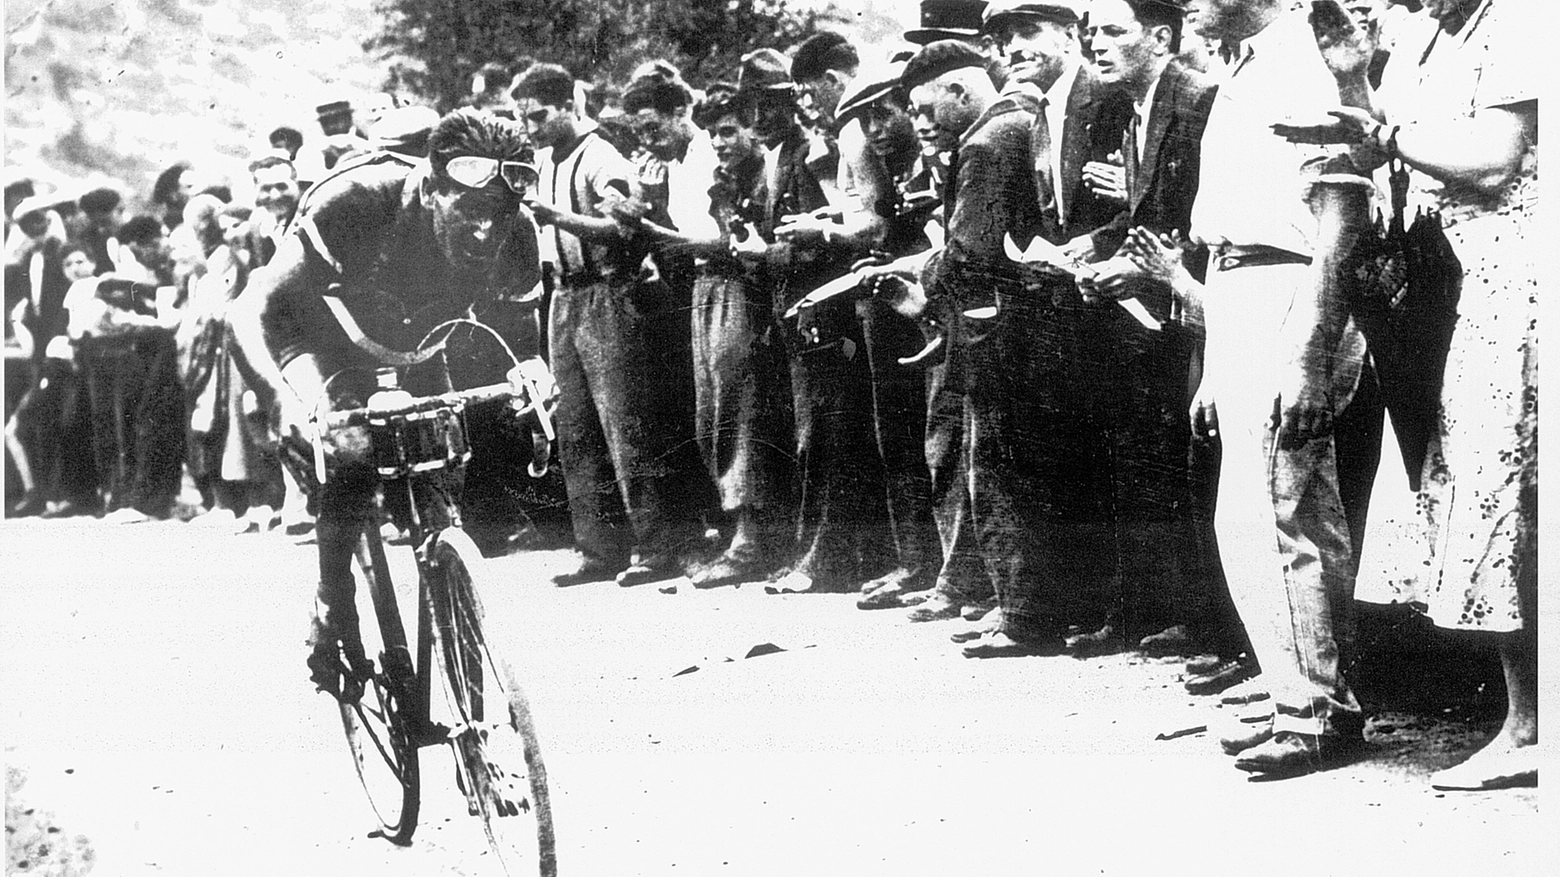 Negozi storici: chiude la bottega delle bici fondata da Adriano Vignoli, vincitore al Giro e al Tour